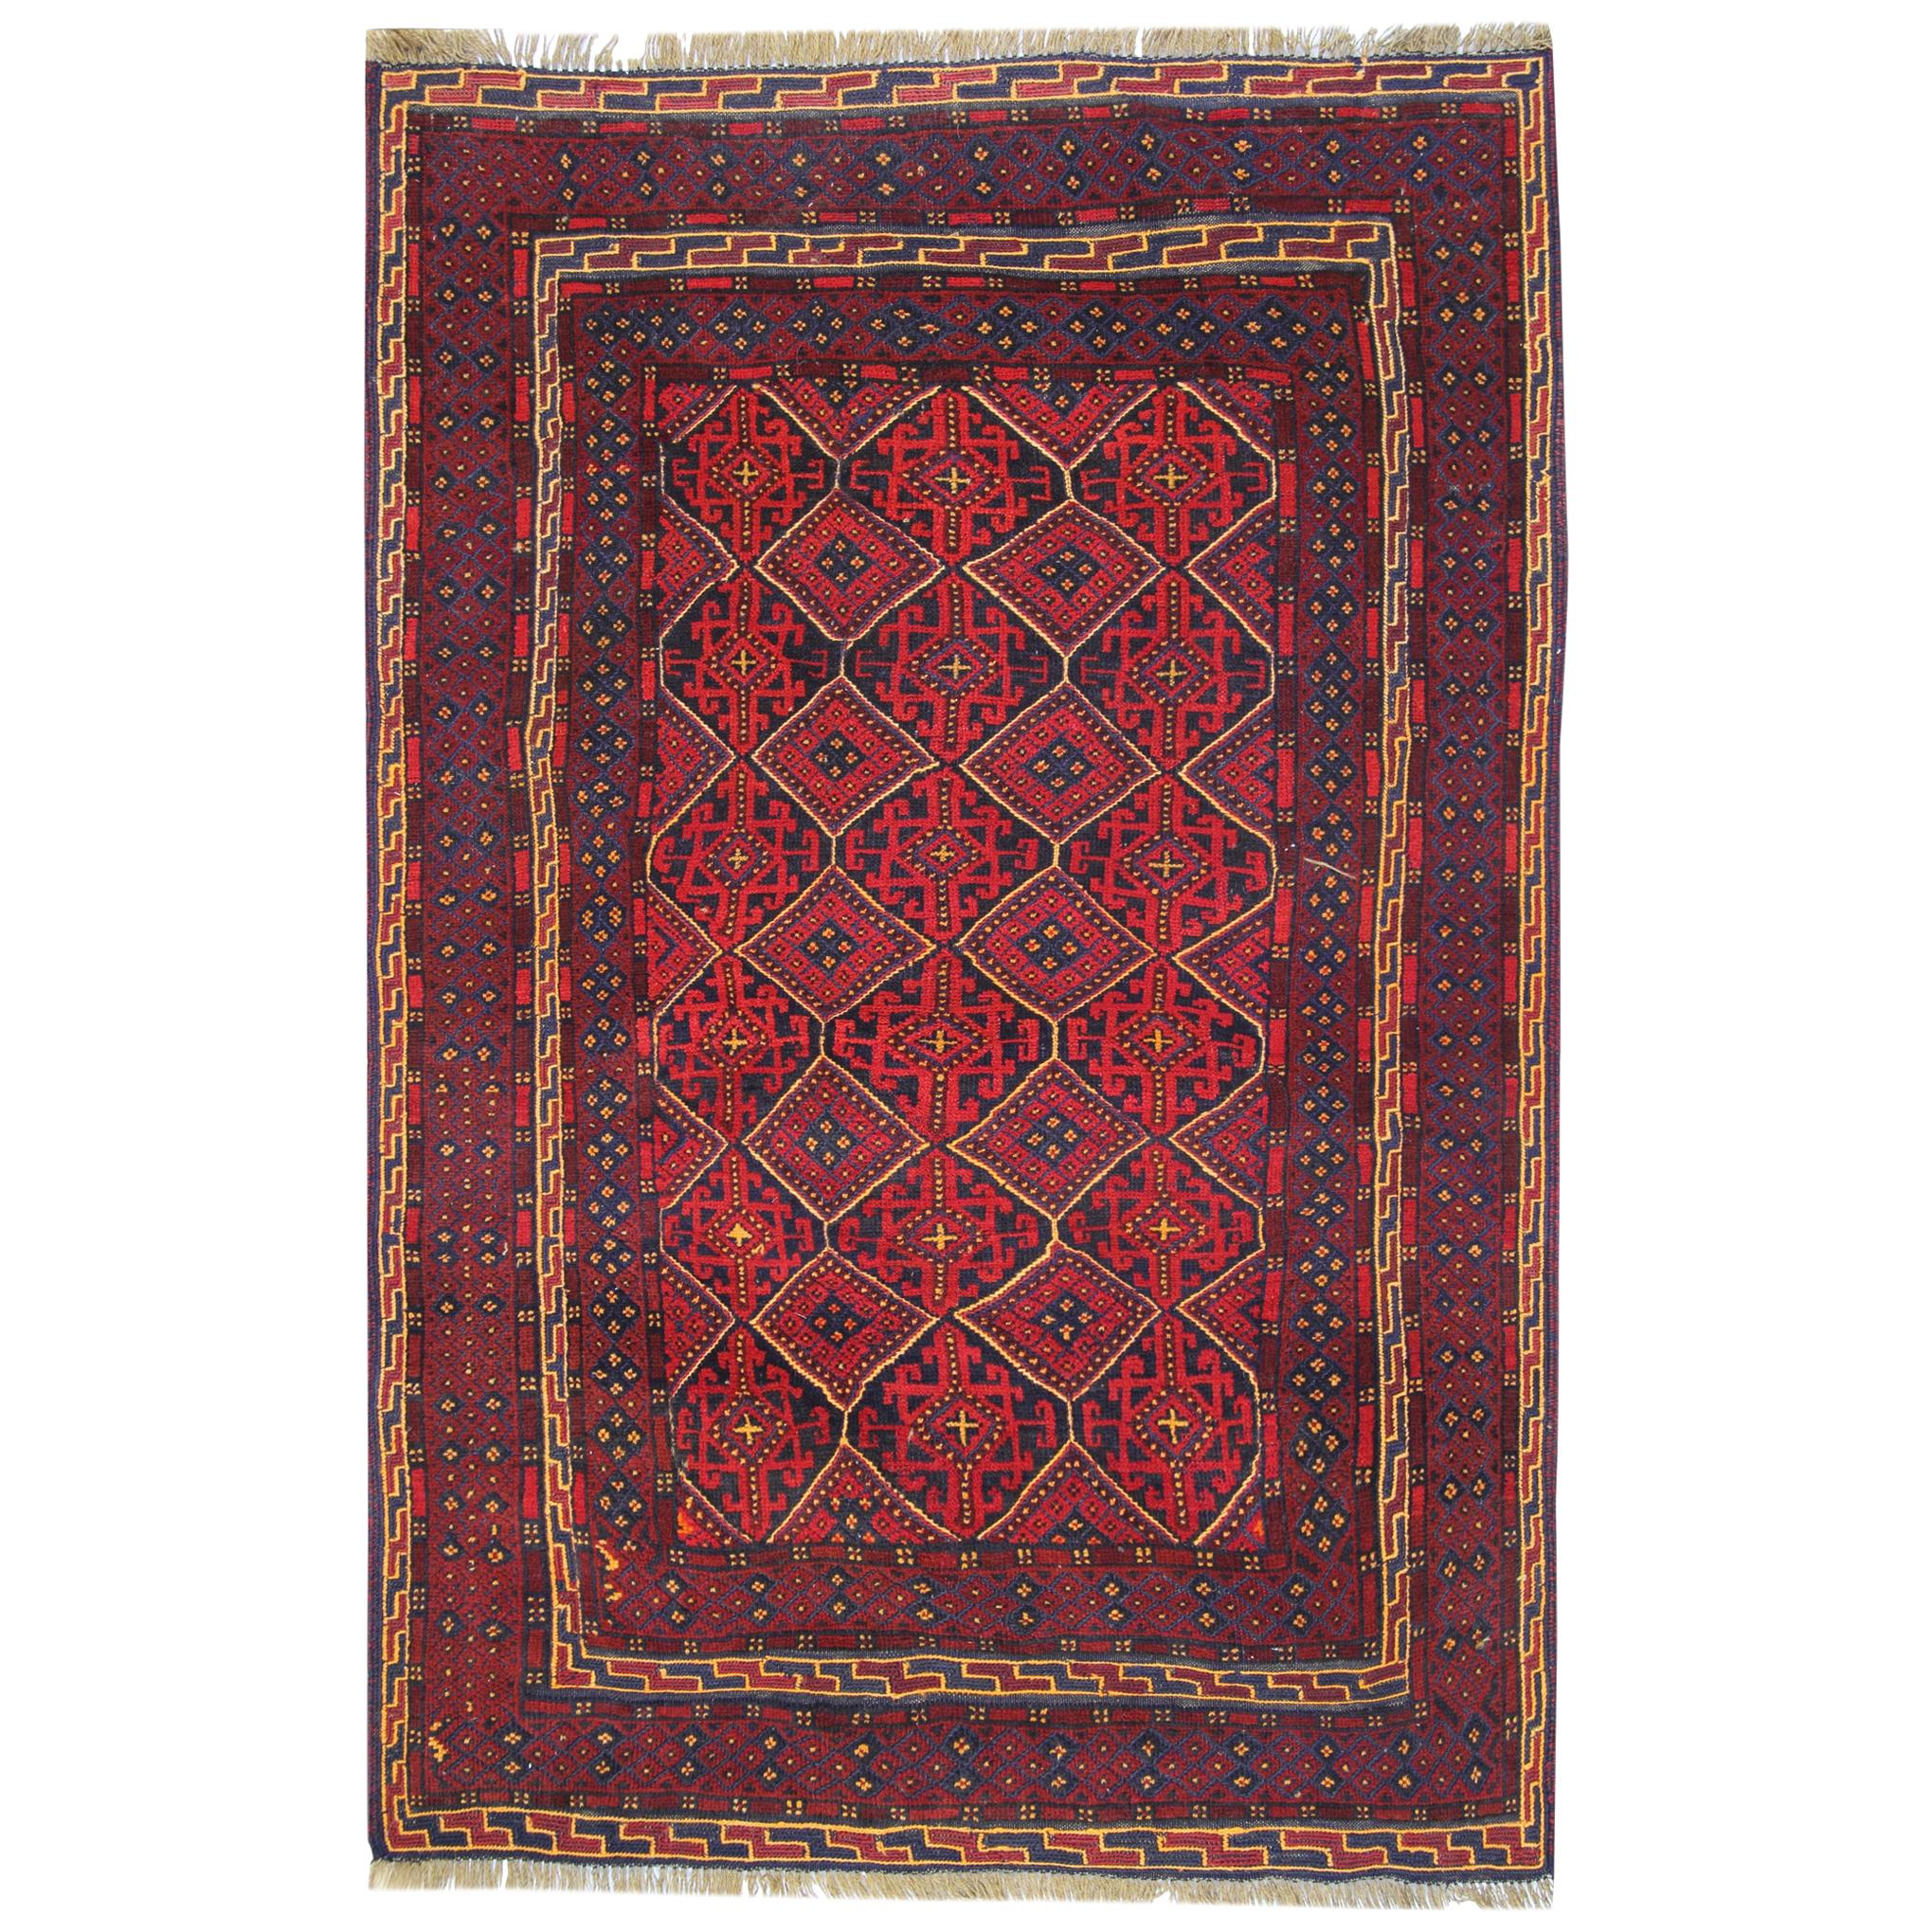 Vintage Handmade Oriental Afghan Rug Traditional Deep Red Rugs Turkmen Carpet